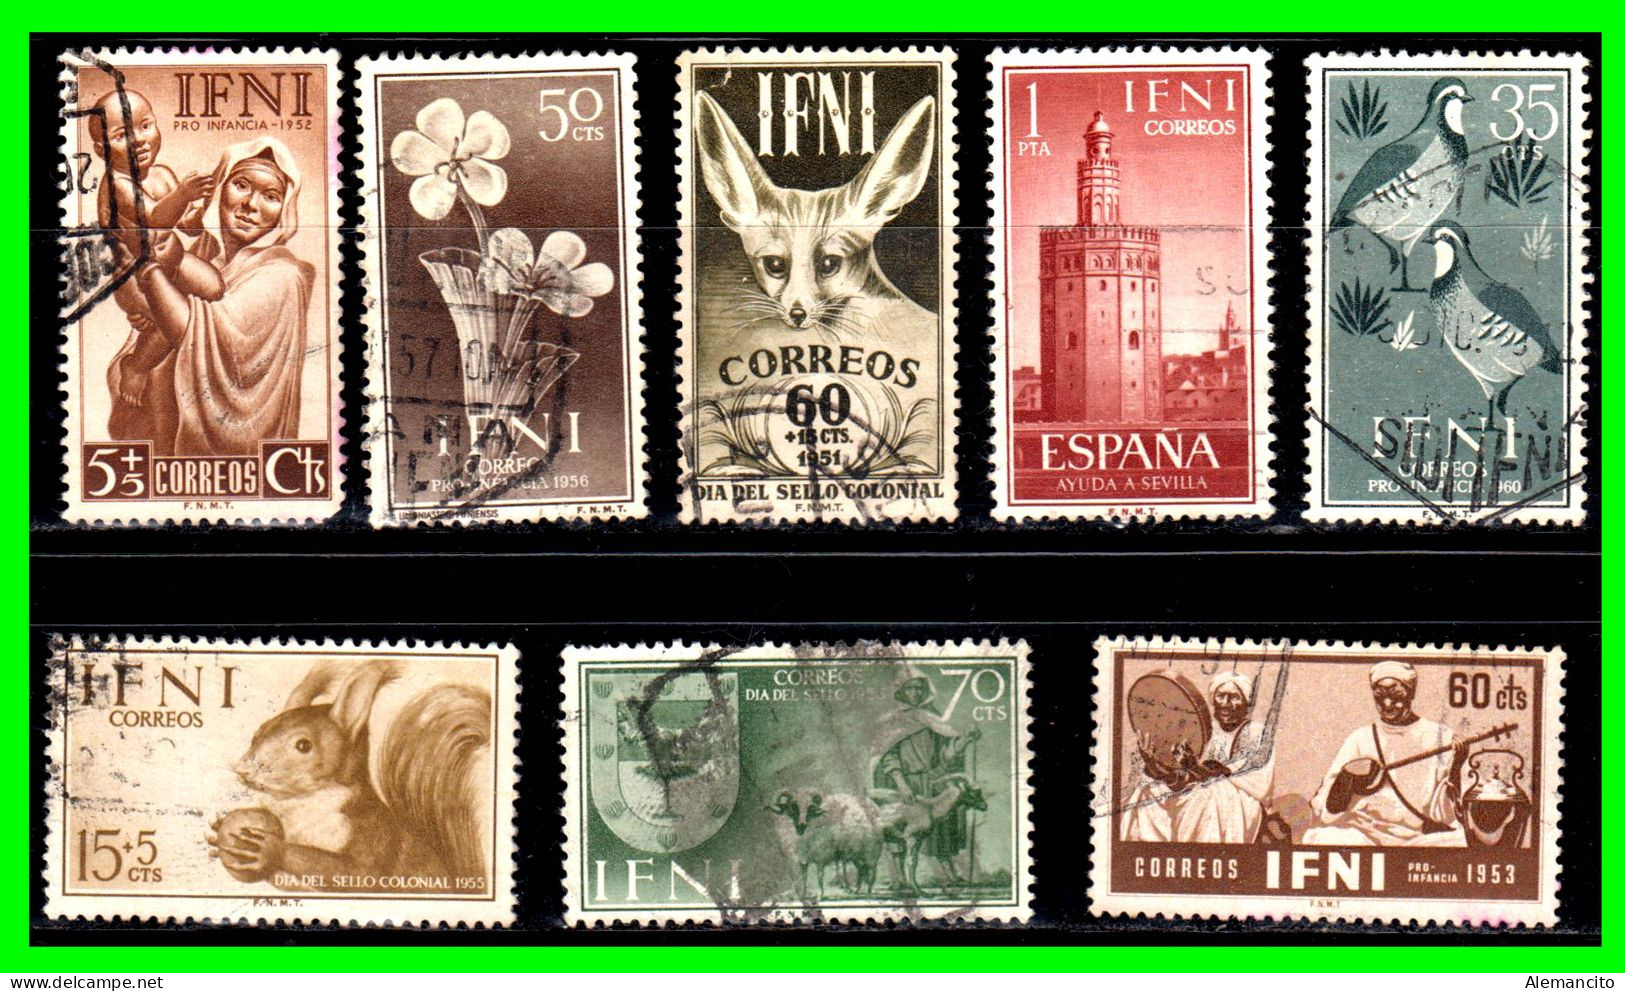 ESPAÑA – COLONIAS ESPAÑOLAS (IFNI AFRICA) LOTE DE SELLOS AÑOS 1950-60 DIFERENTES VALORES NUEVOS Y USADOS - Ifni